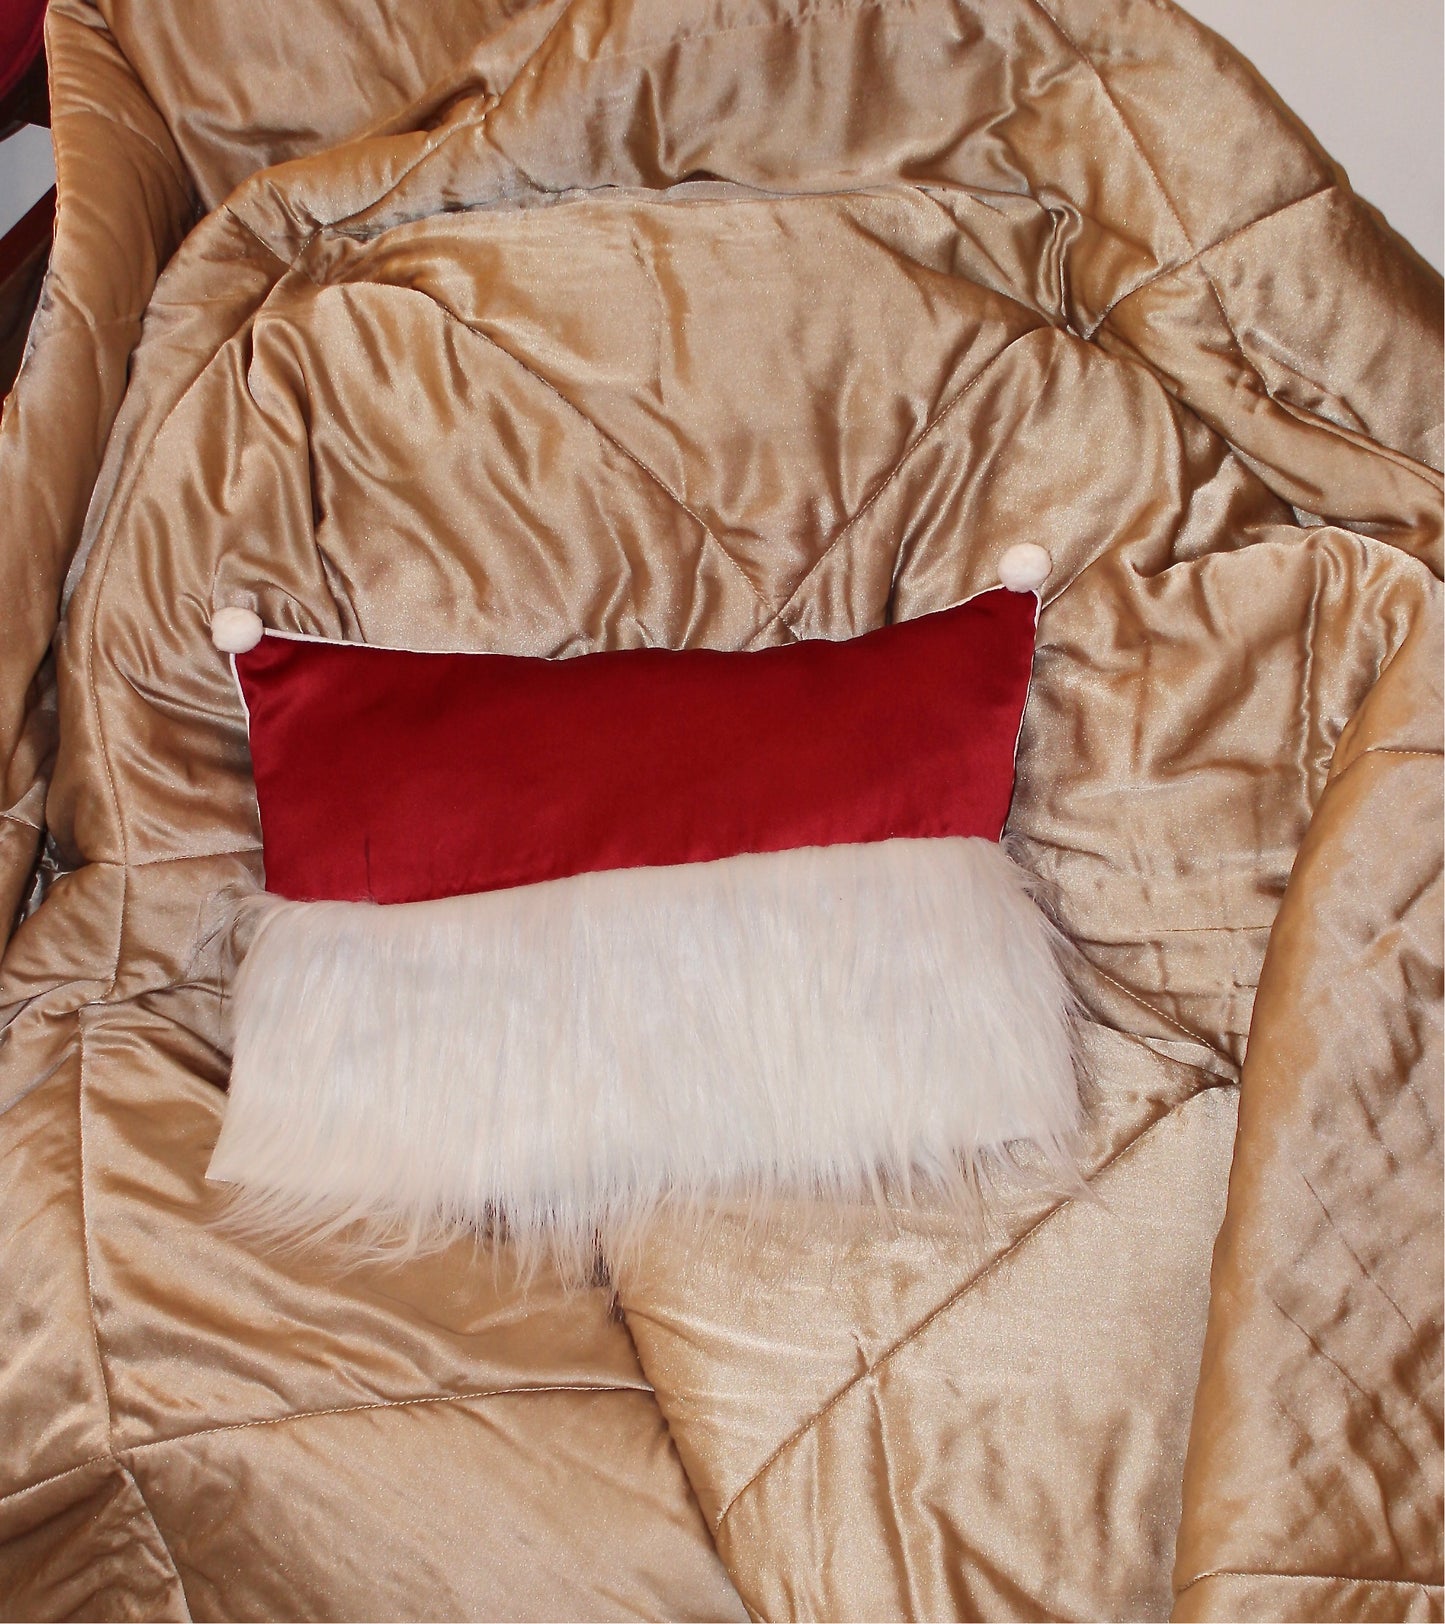 Santa cushion